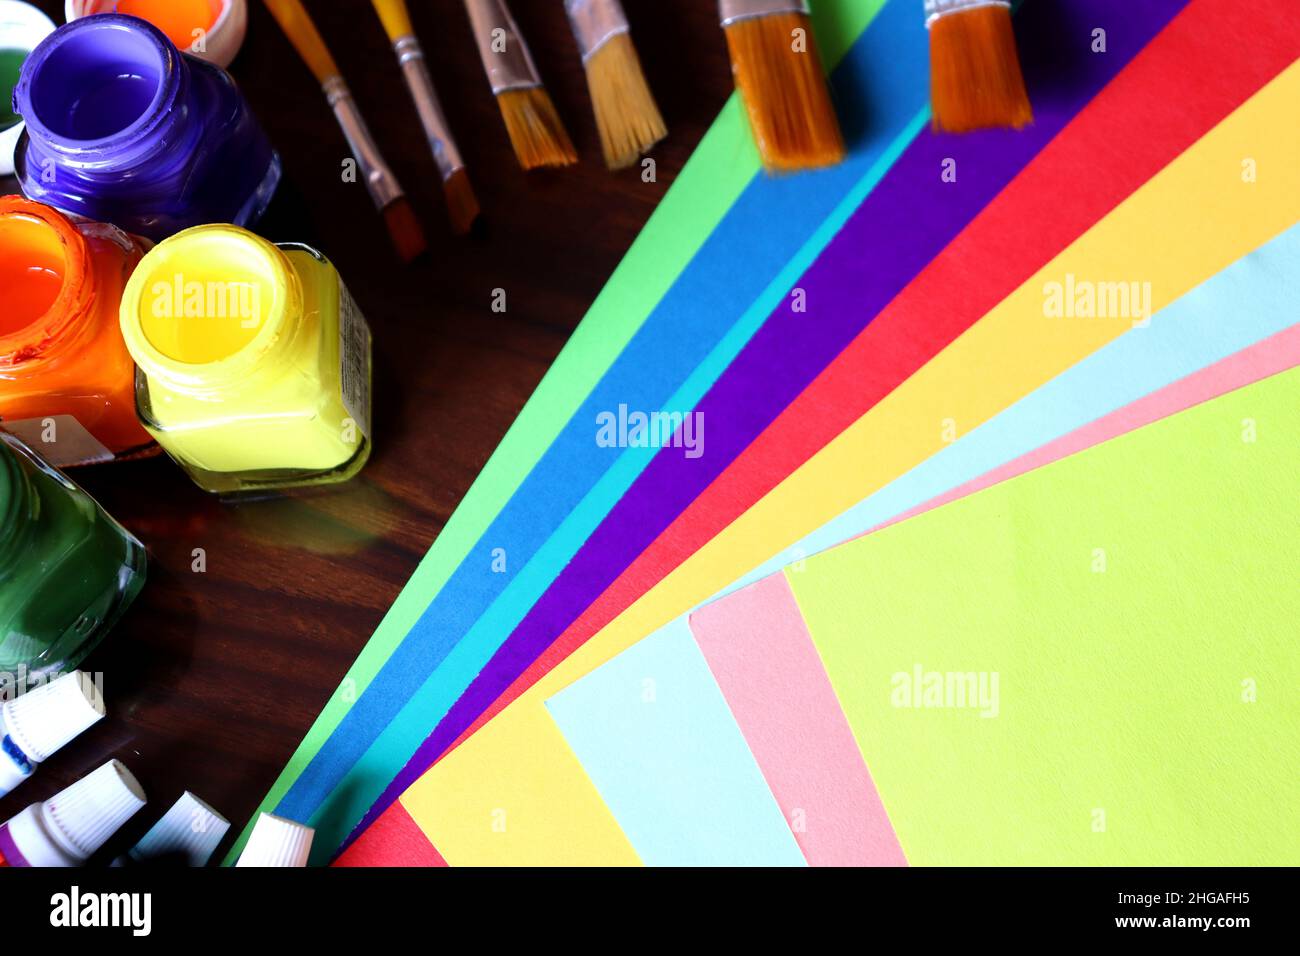 Kunst- und Handwerksausrüstungen, Kunstwerke, Farbpapier, Farbtuben und Pinsel auf einem Tisch, Studentenarbeit Stockfoto